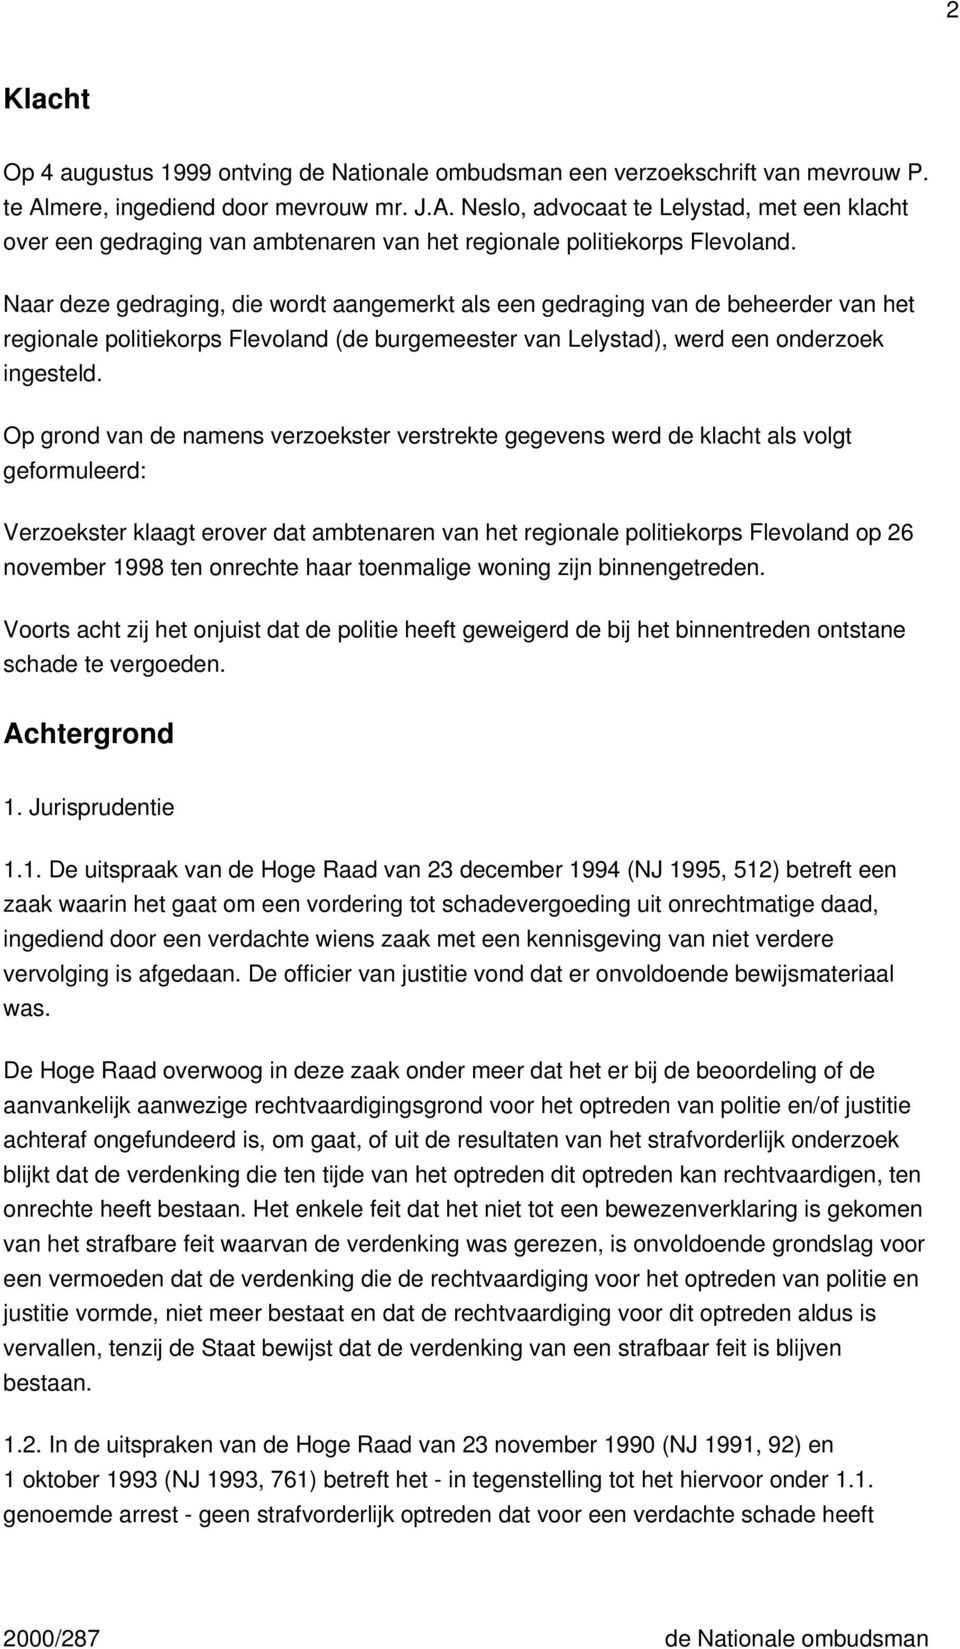 Naar deze gedraging, die wordt aangemerkt als een gedraging van de beheerder van het regionale politiekorps Flevoland (de burgemeester van Lelystad), werd een onderzoek ingesteld.